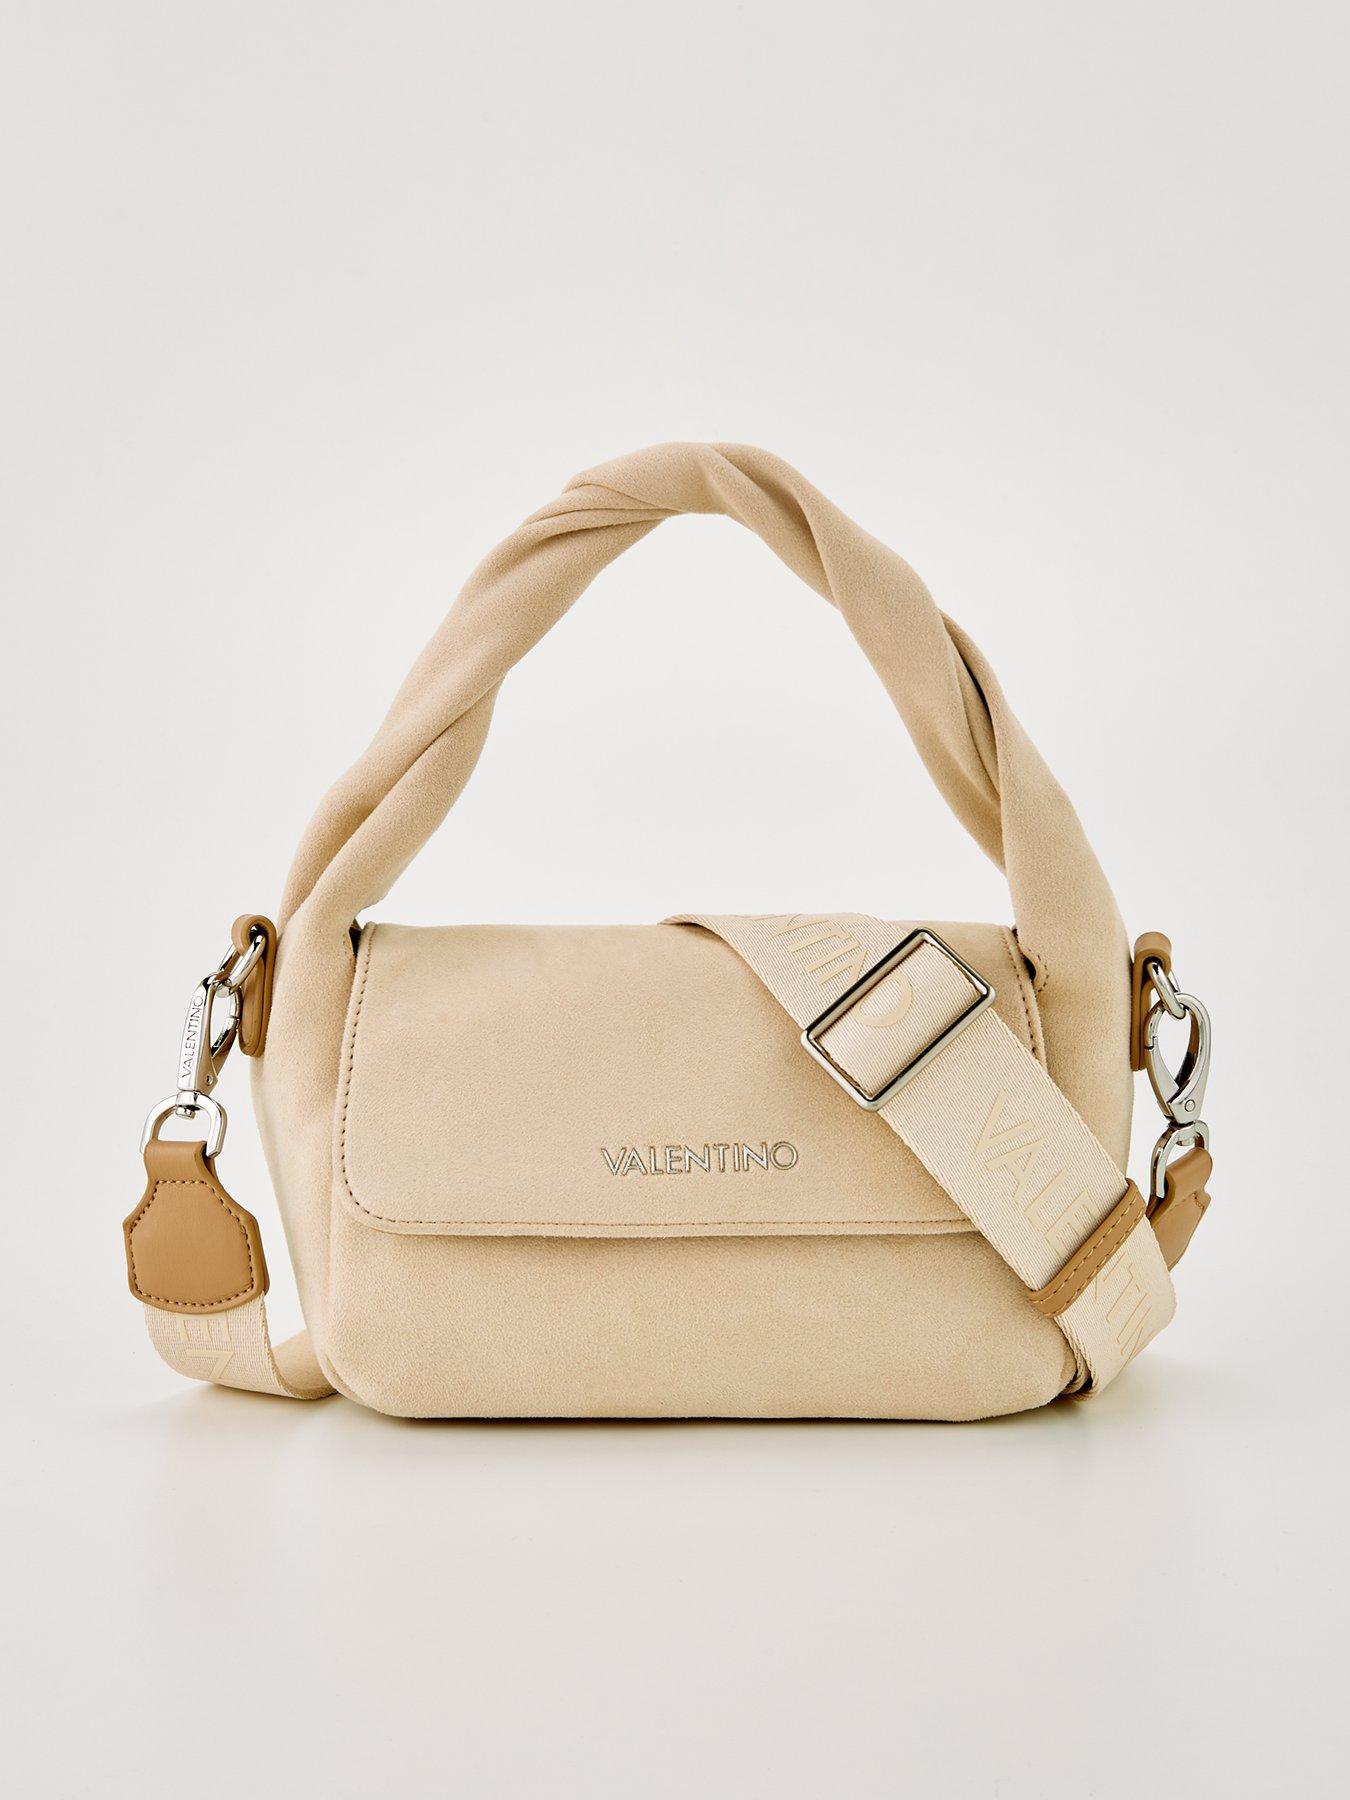 Valentino bag - 121 Brand Shop